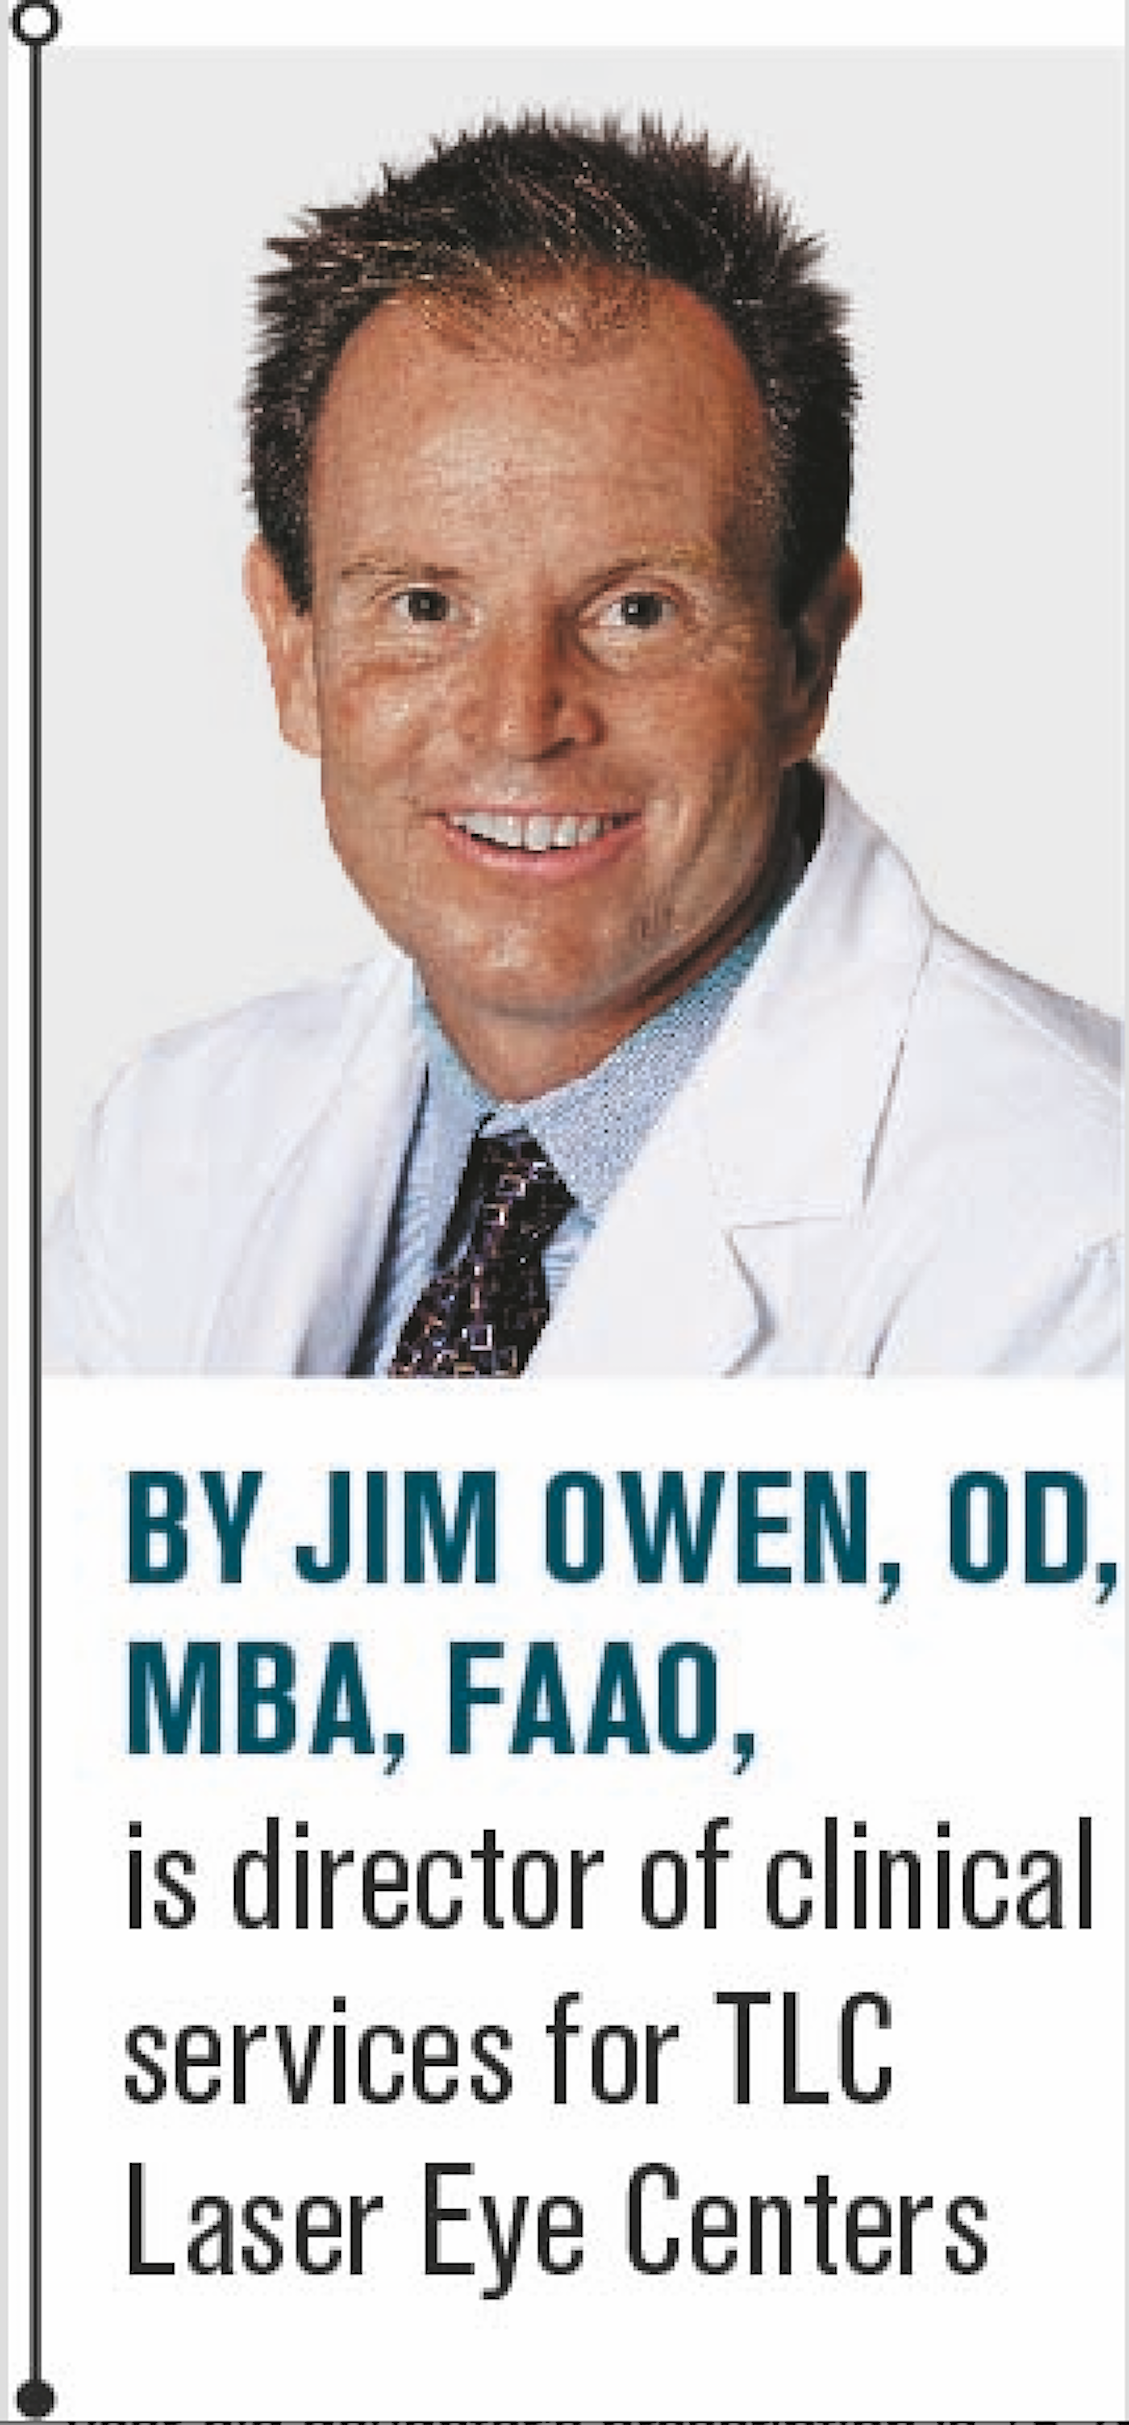 Jim Owen